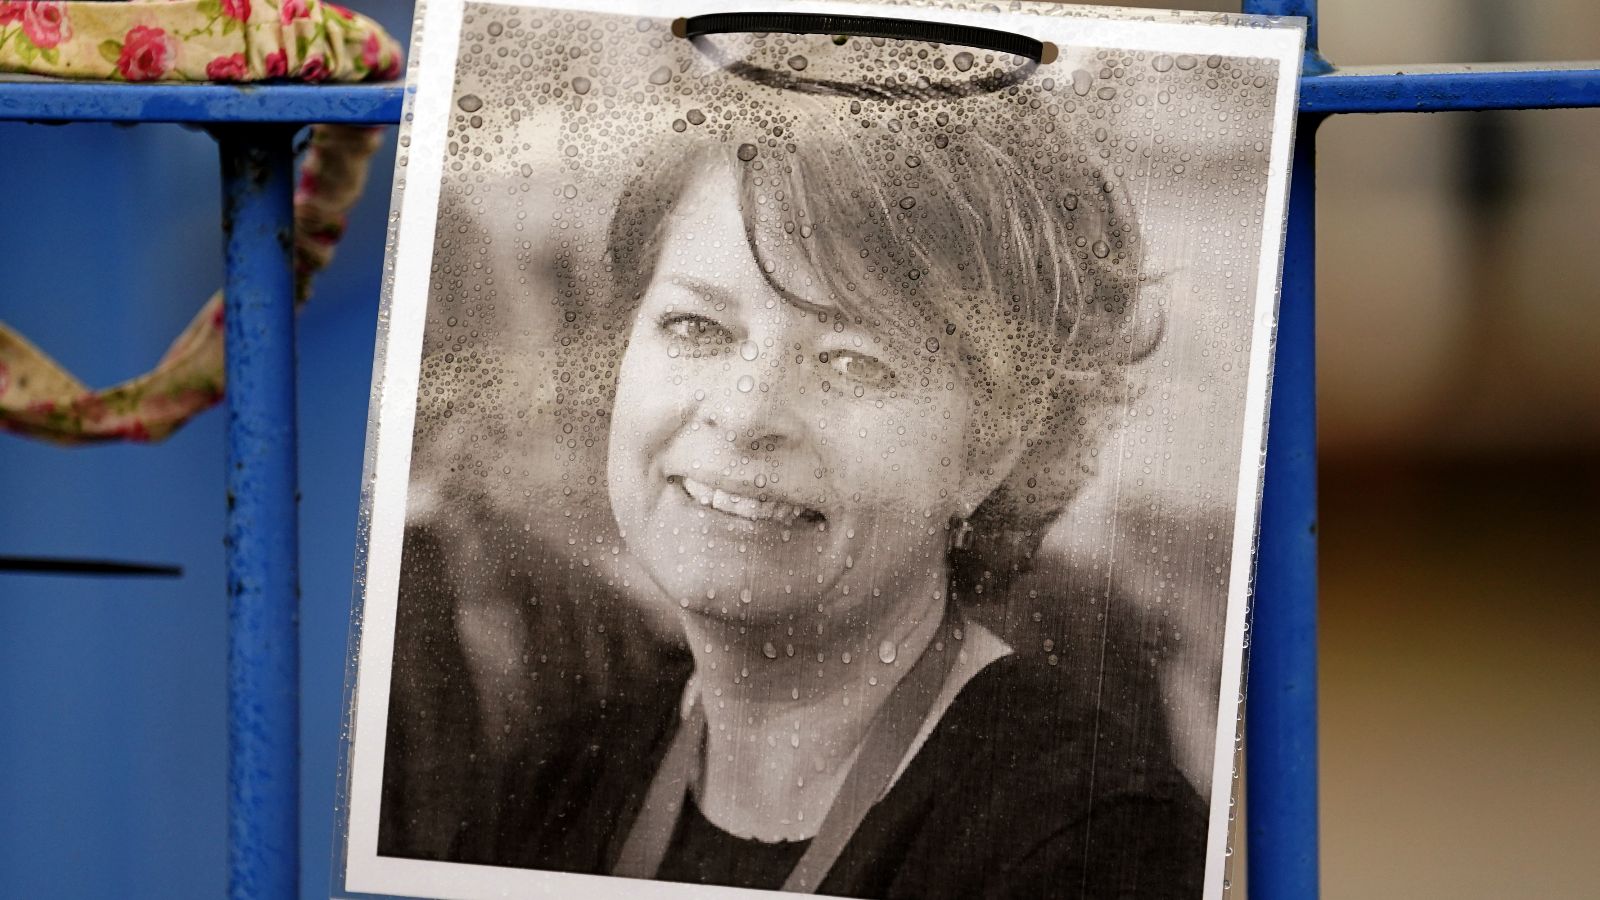 Рут Пери: Директорката, която посегна на живота си „много сълзливо“ след доклада на Ofsted, следствие изслушва